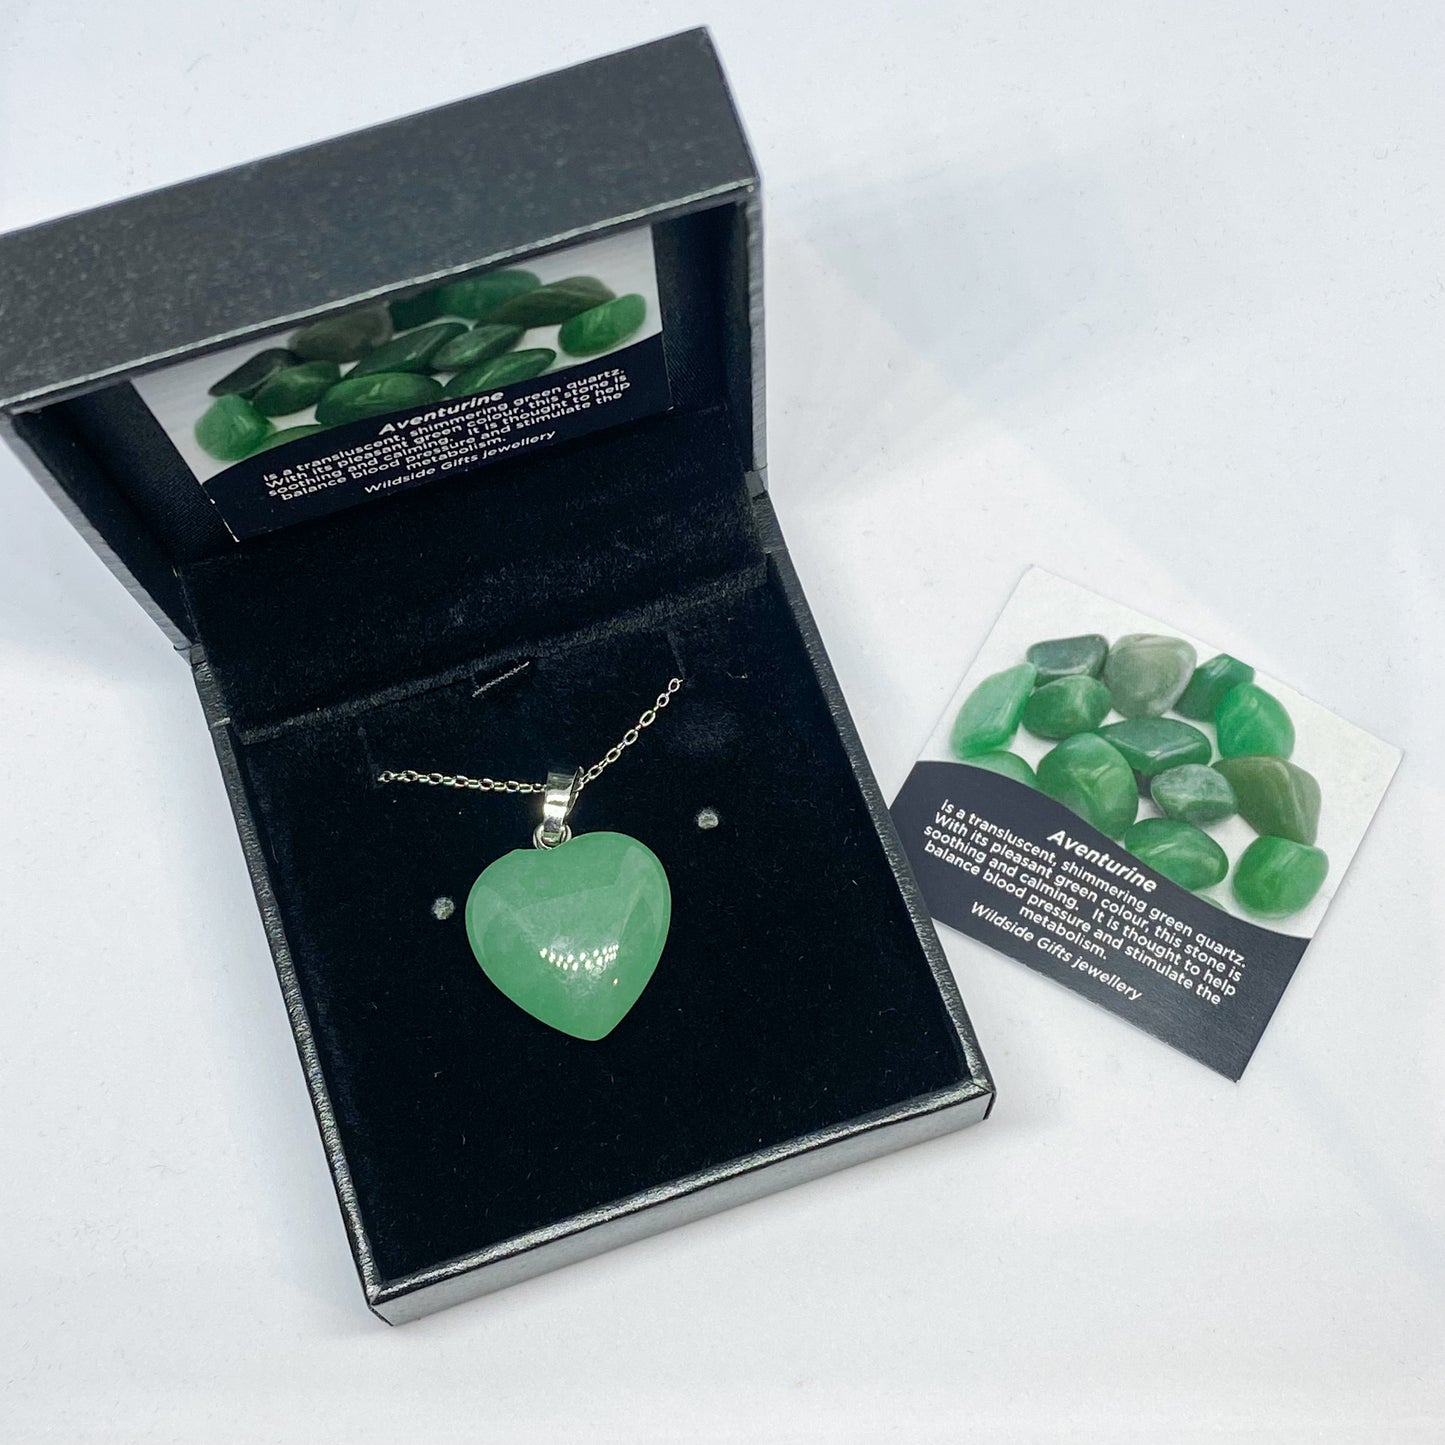 Green Aventurine Heart Pendant - Rivendell Shop